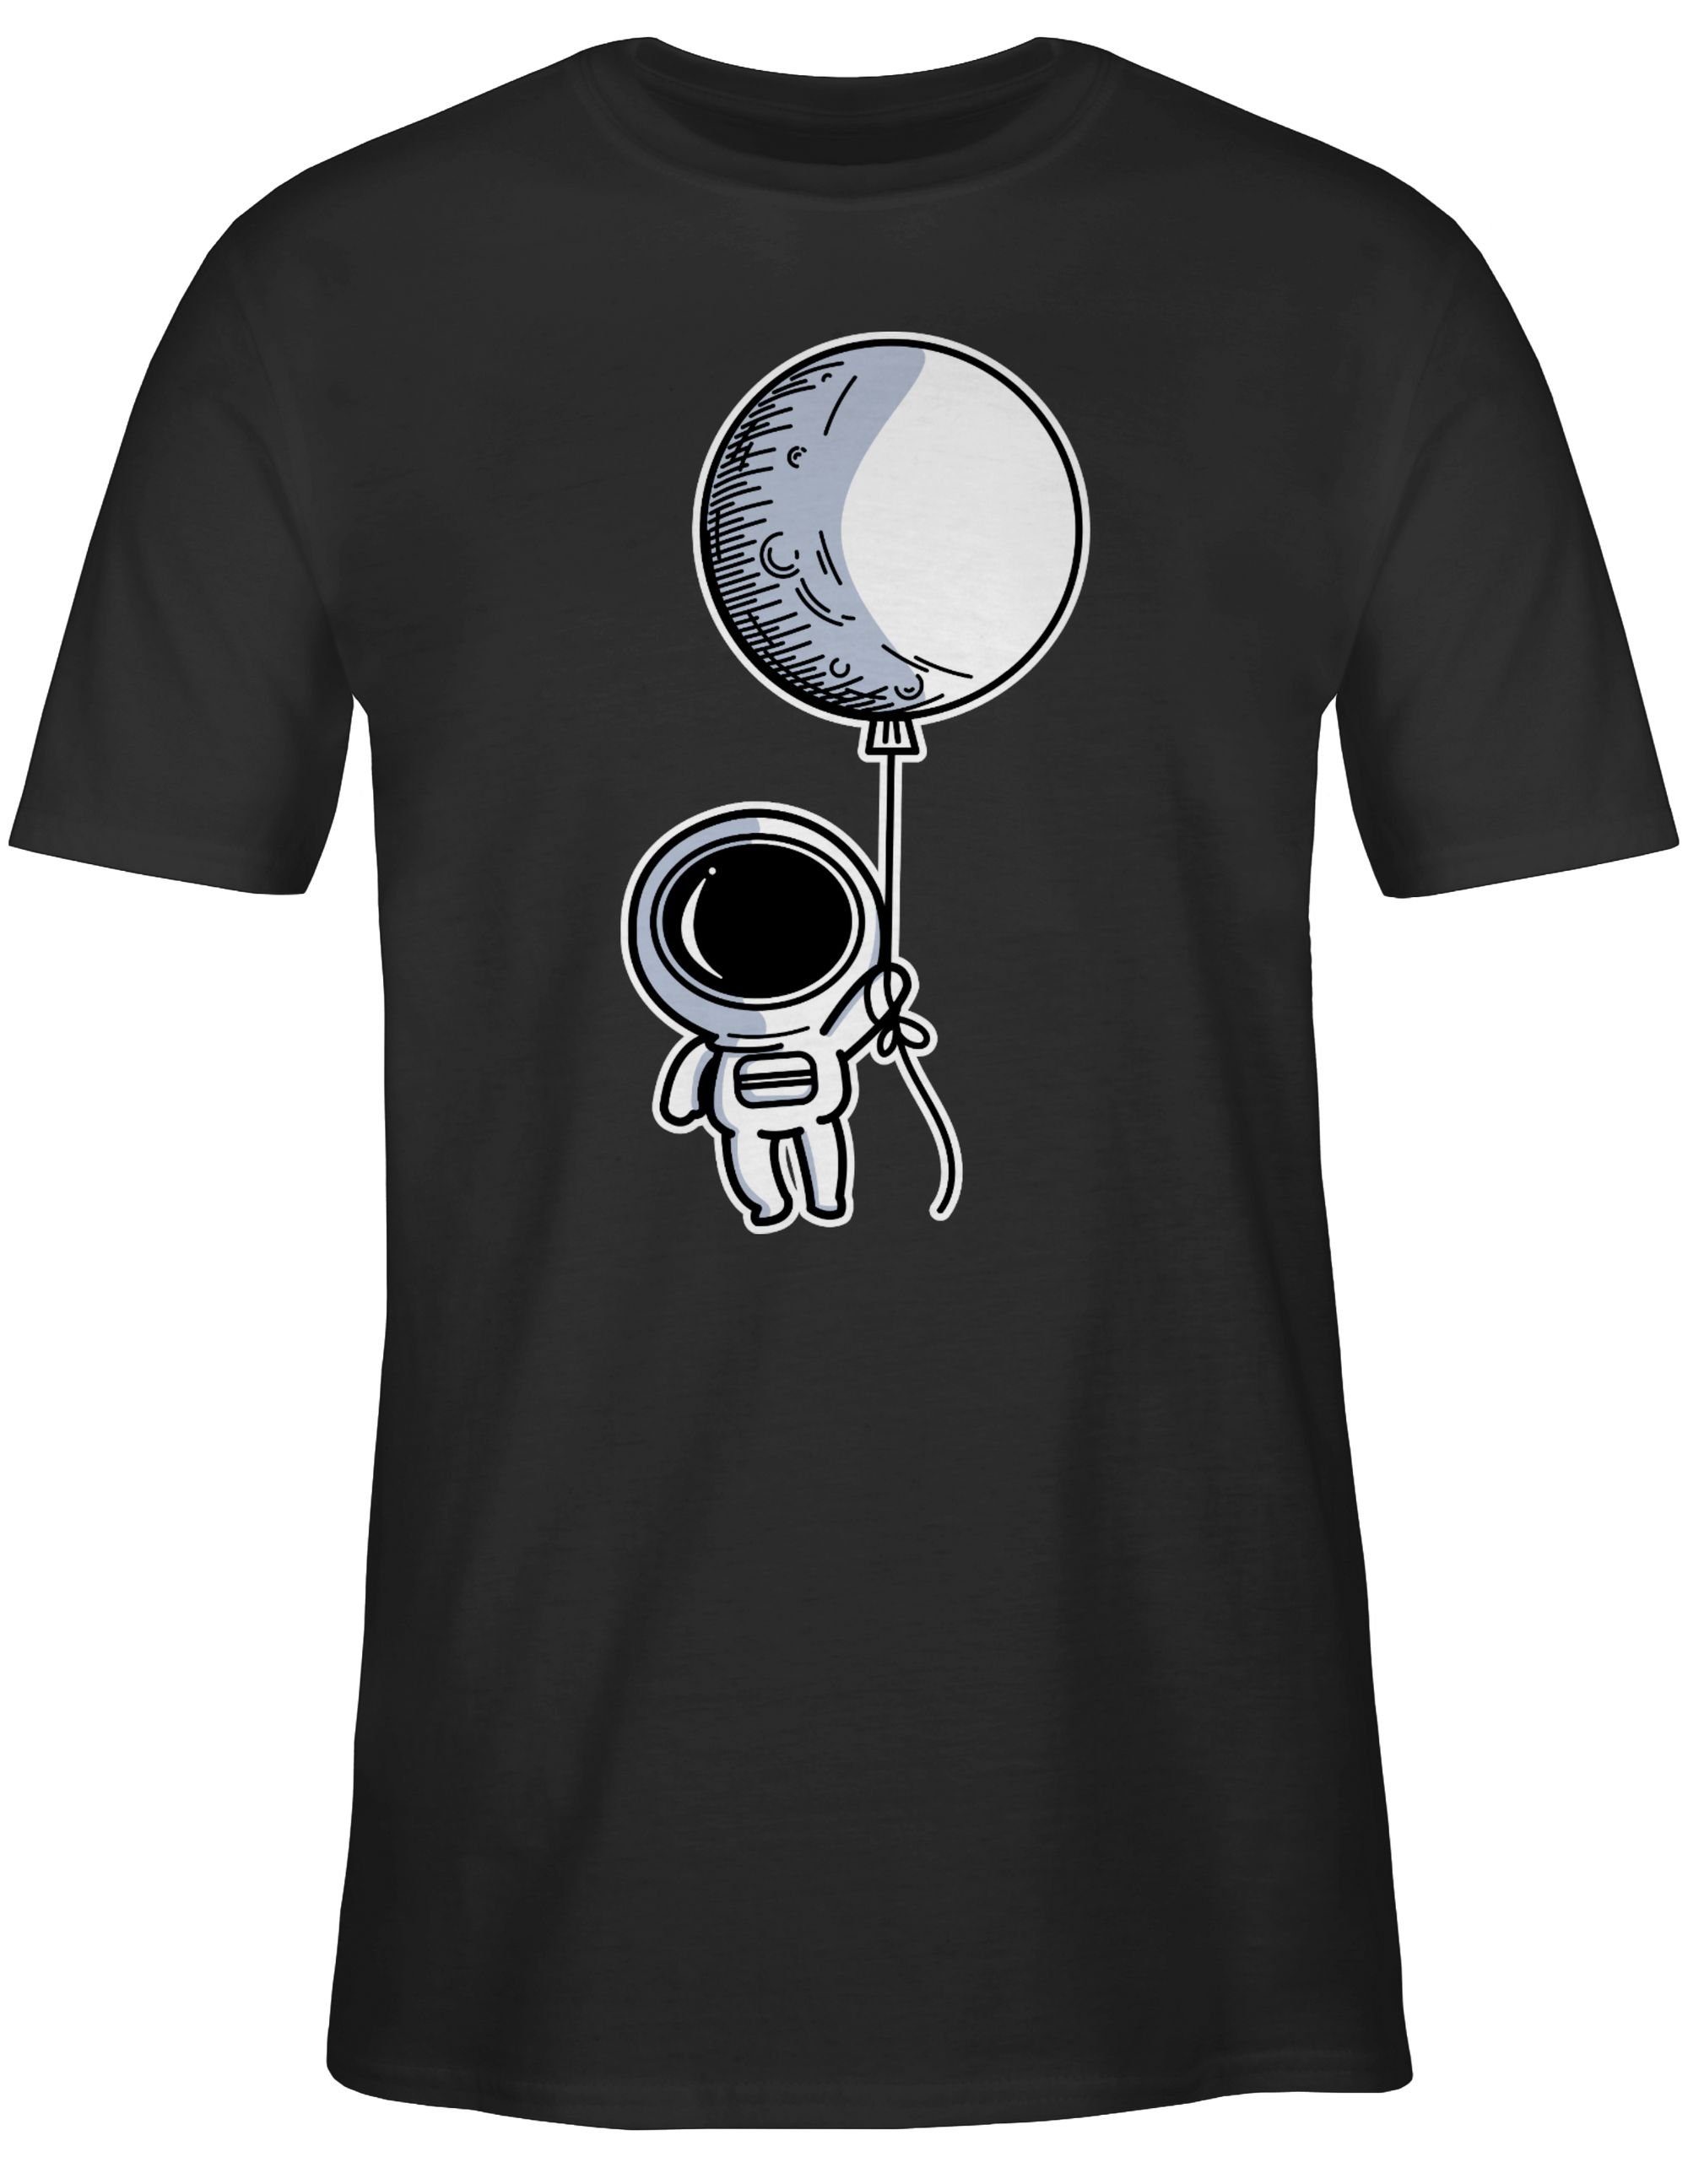 Geschenke Nerd Luftballon Schwarz T-Shirt mit Astronaut 01 Shirtracer